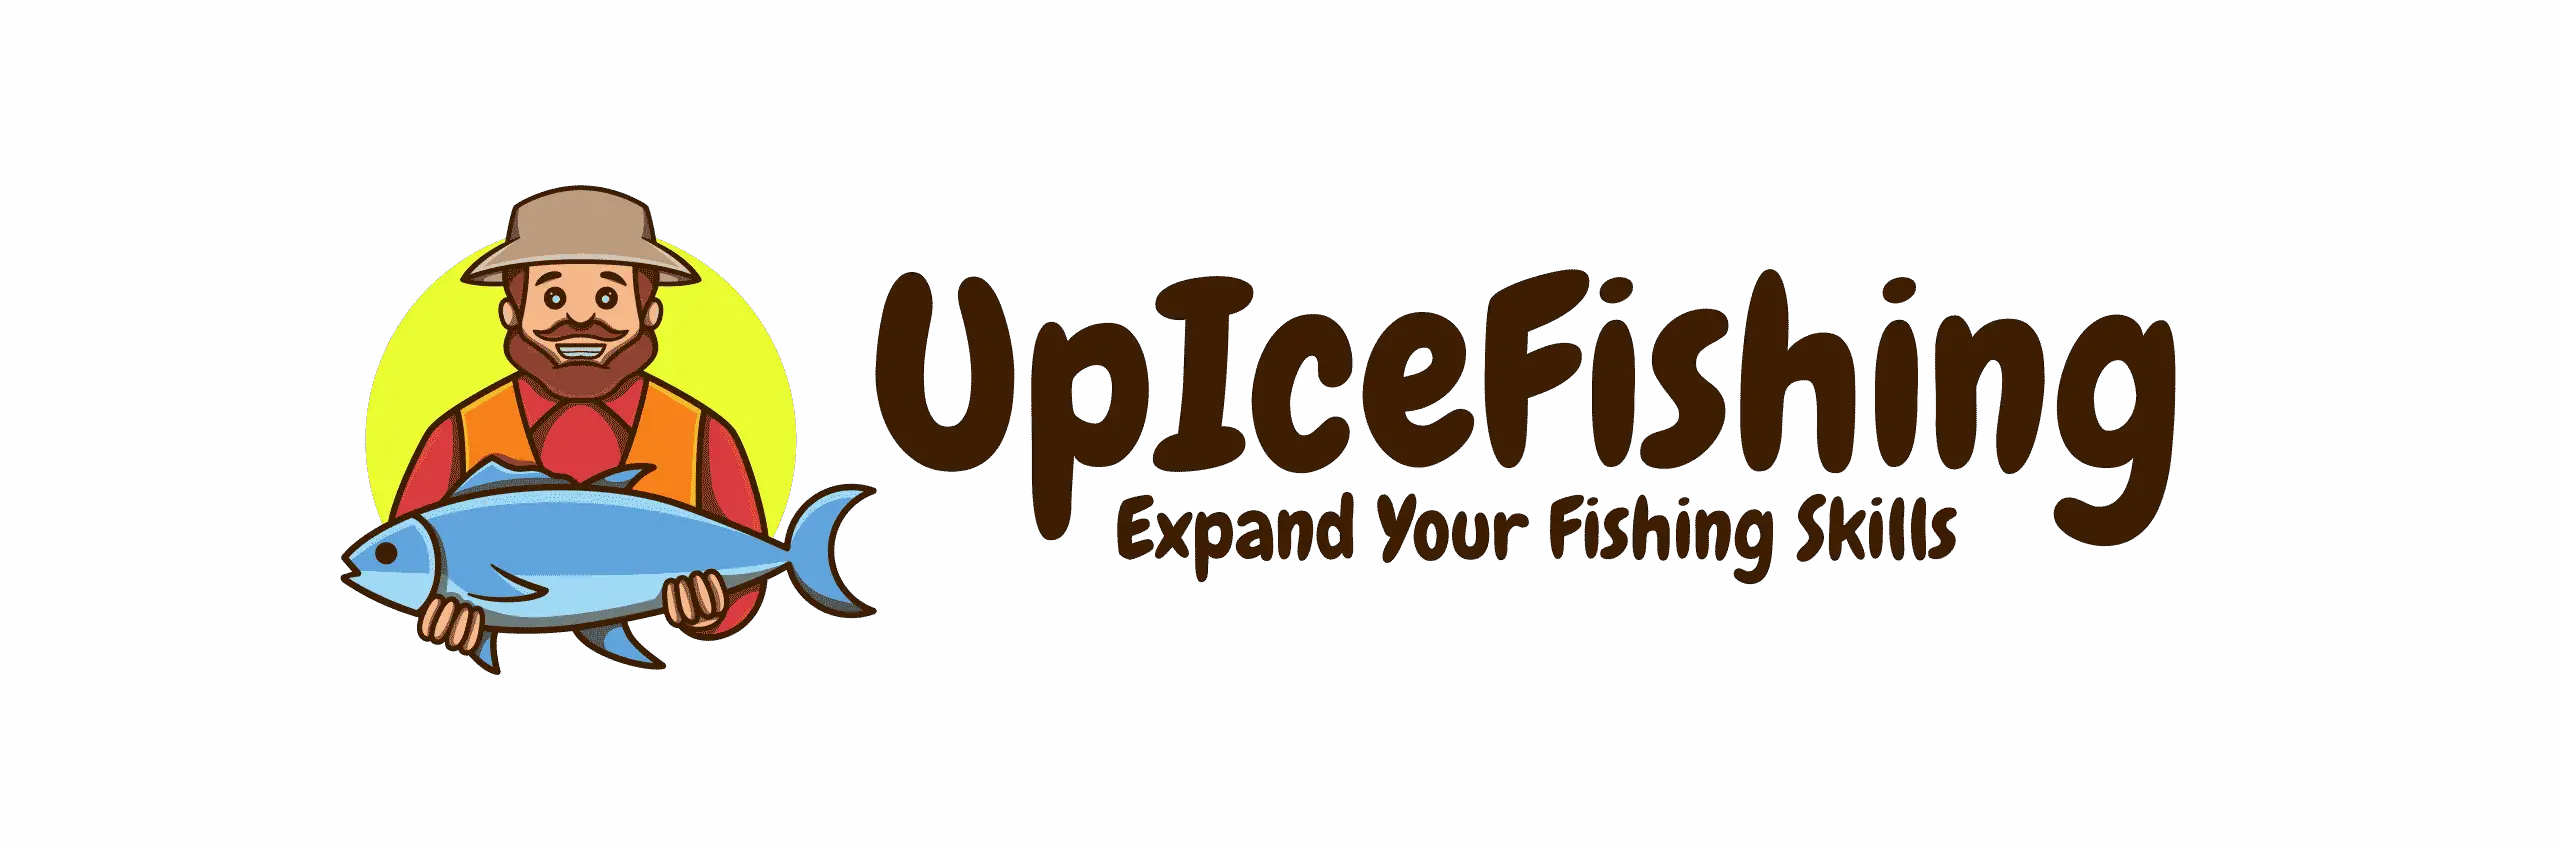 Up ice fishing logo 1